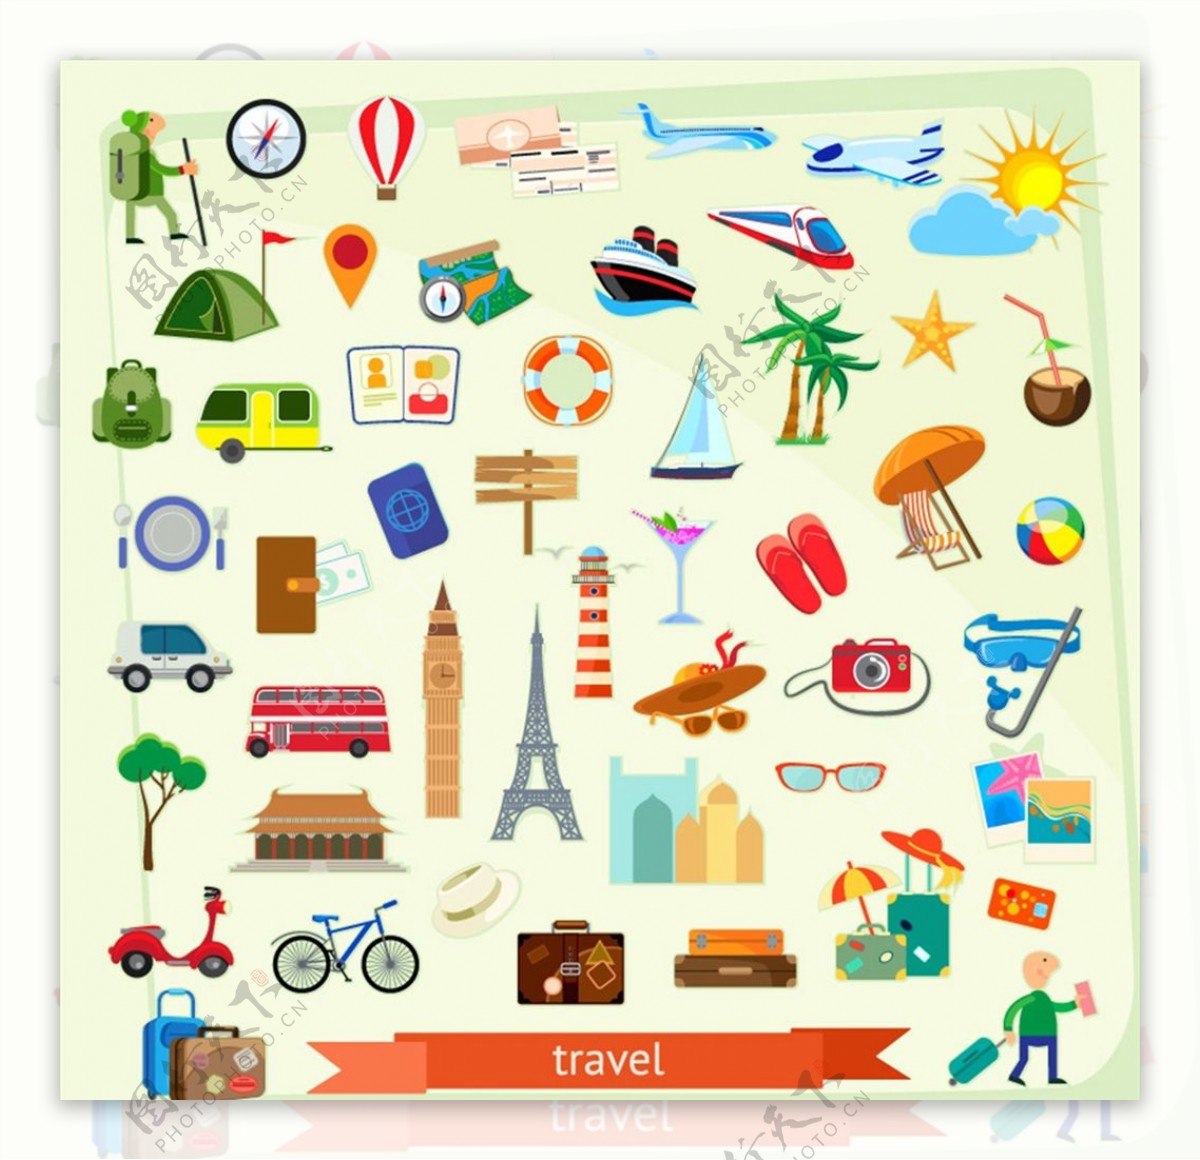 旅游元素图标图片